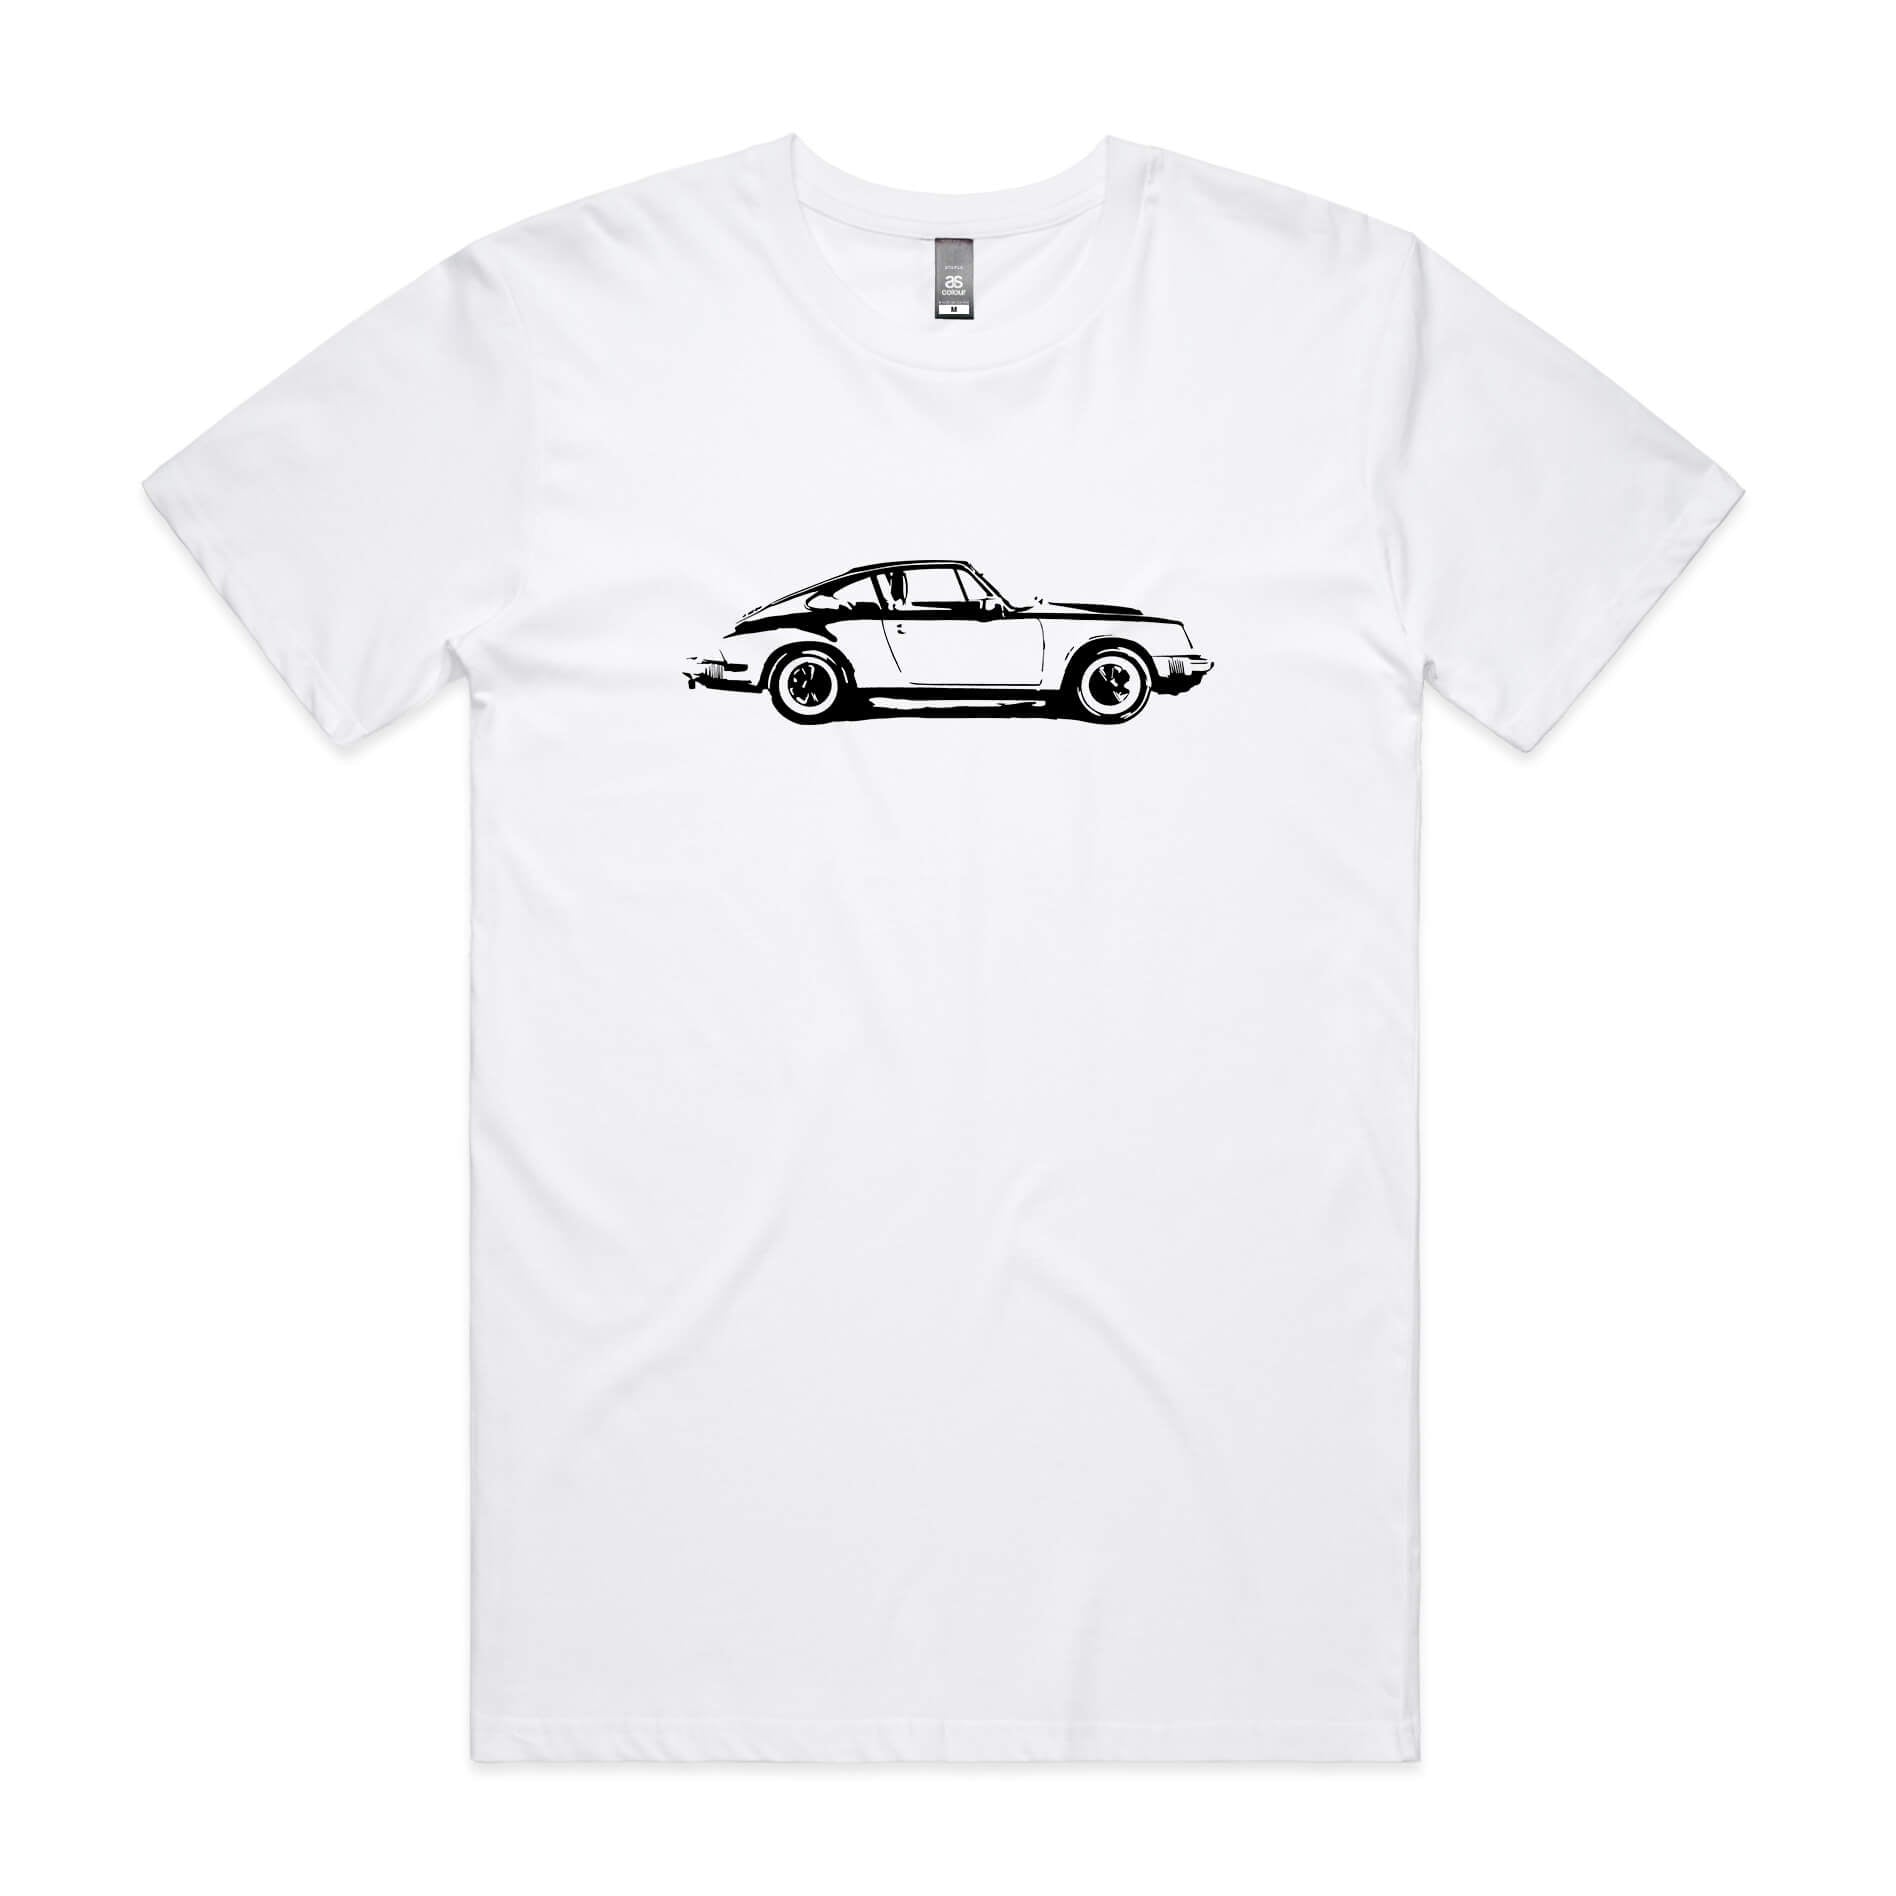 Porsche 911 t-shirt in white